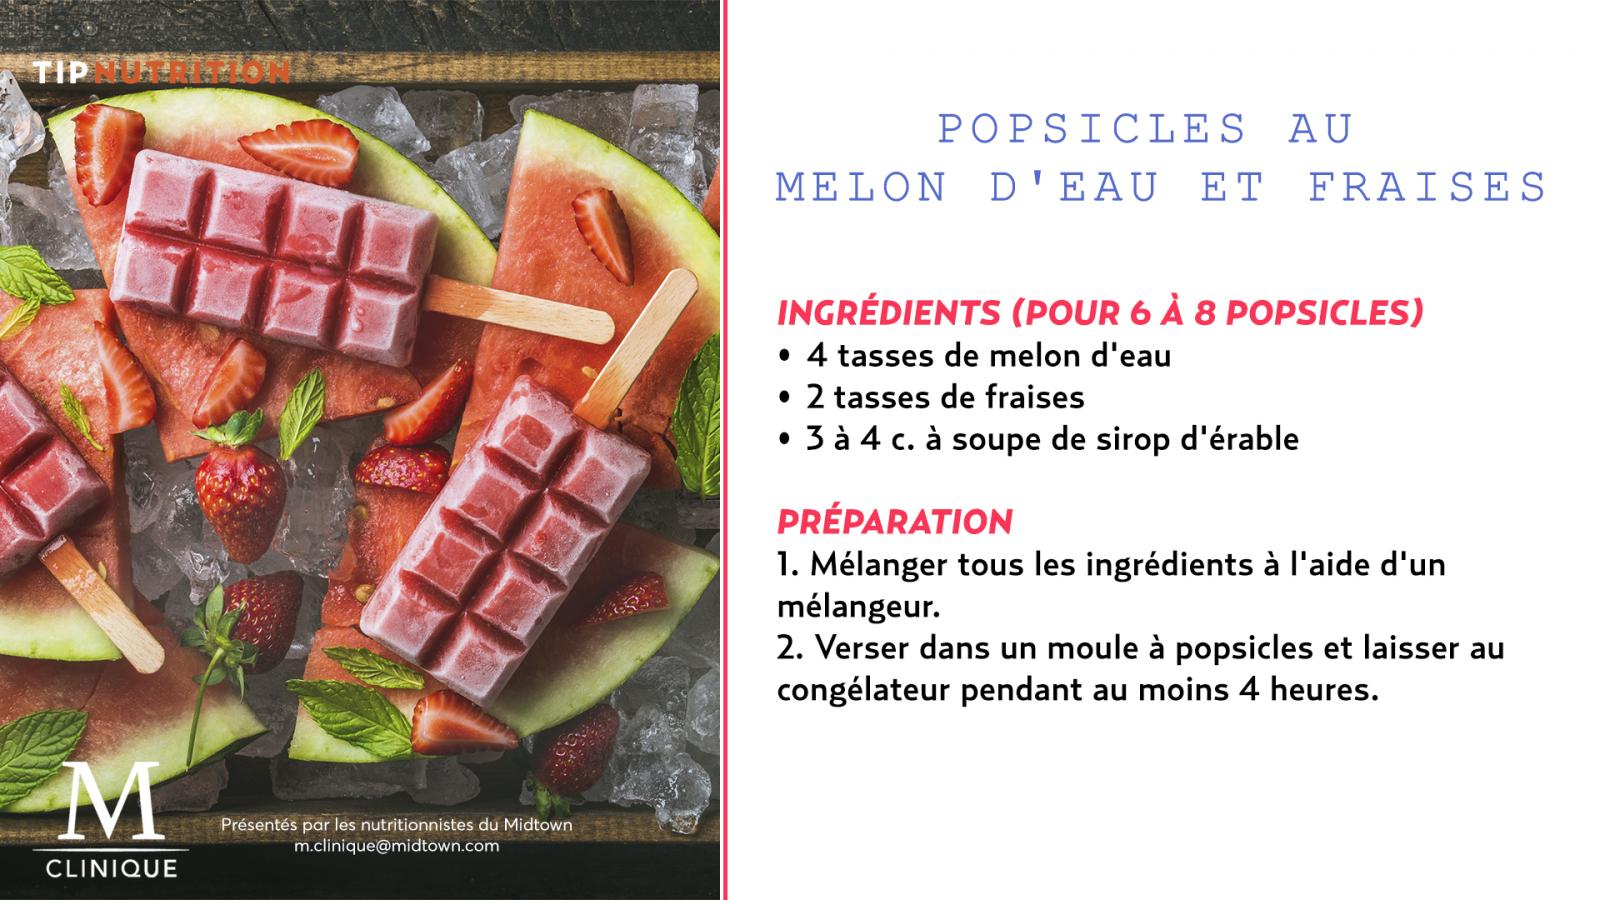 nutrition-popsicle-fraise-melon d'eau